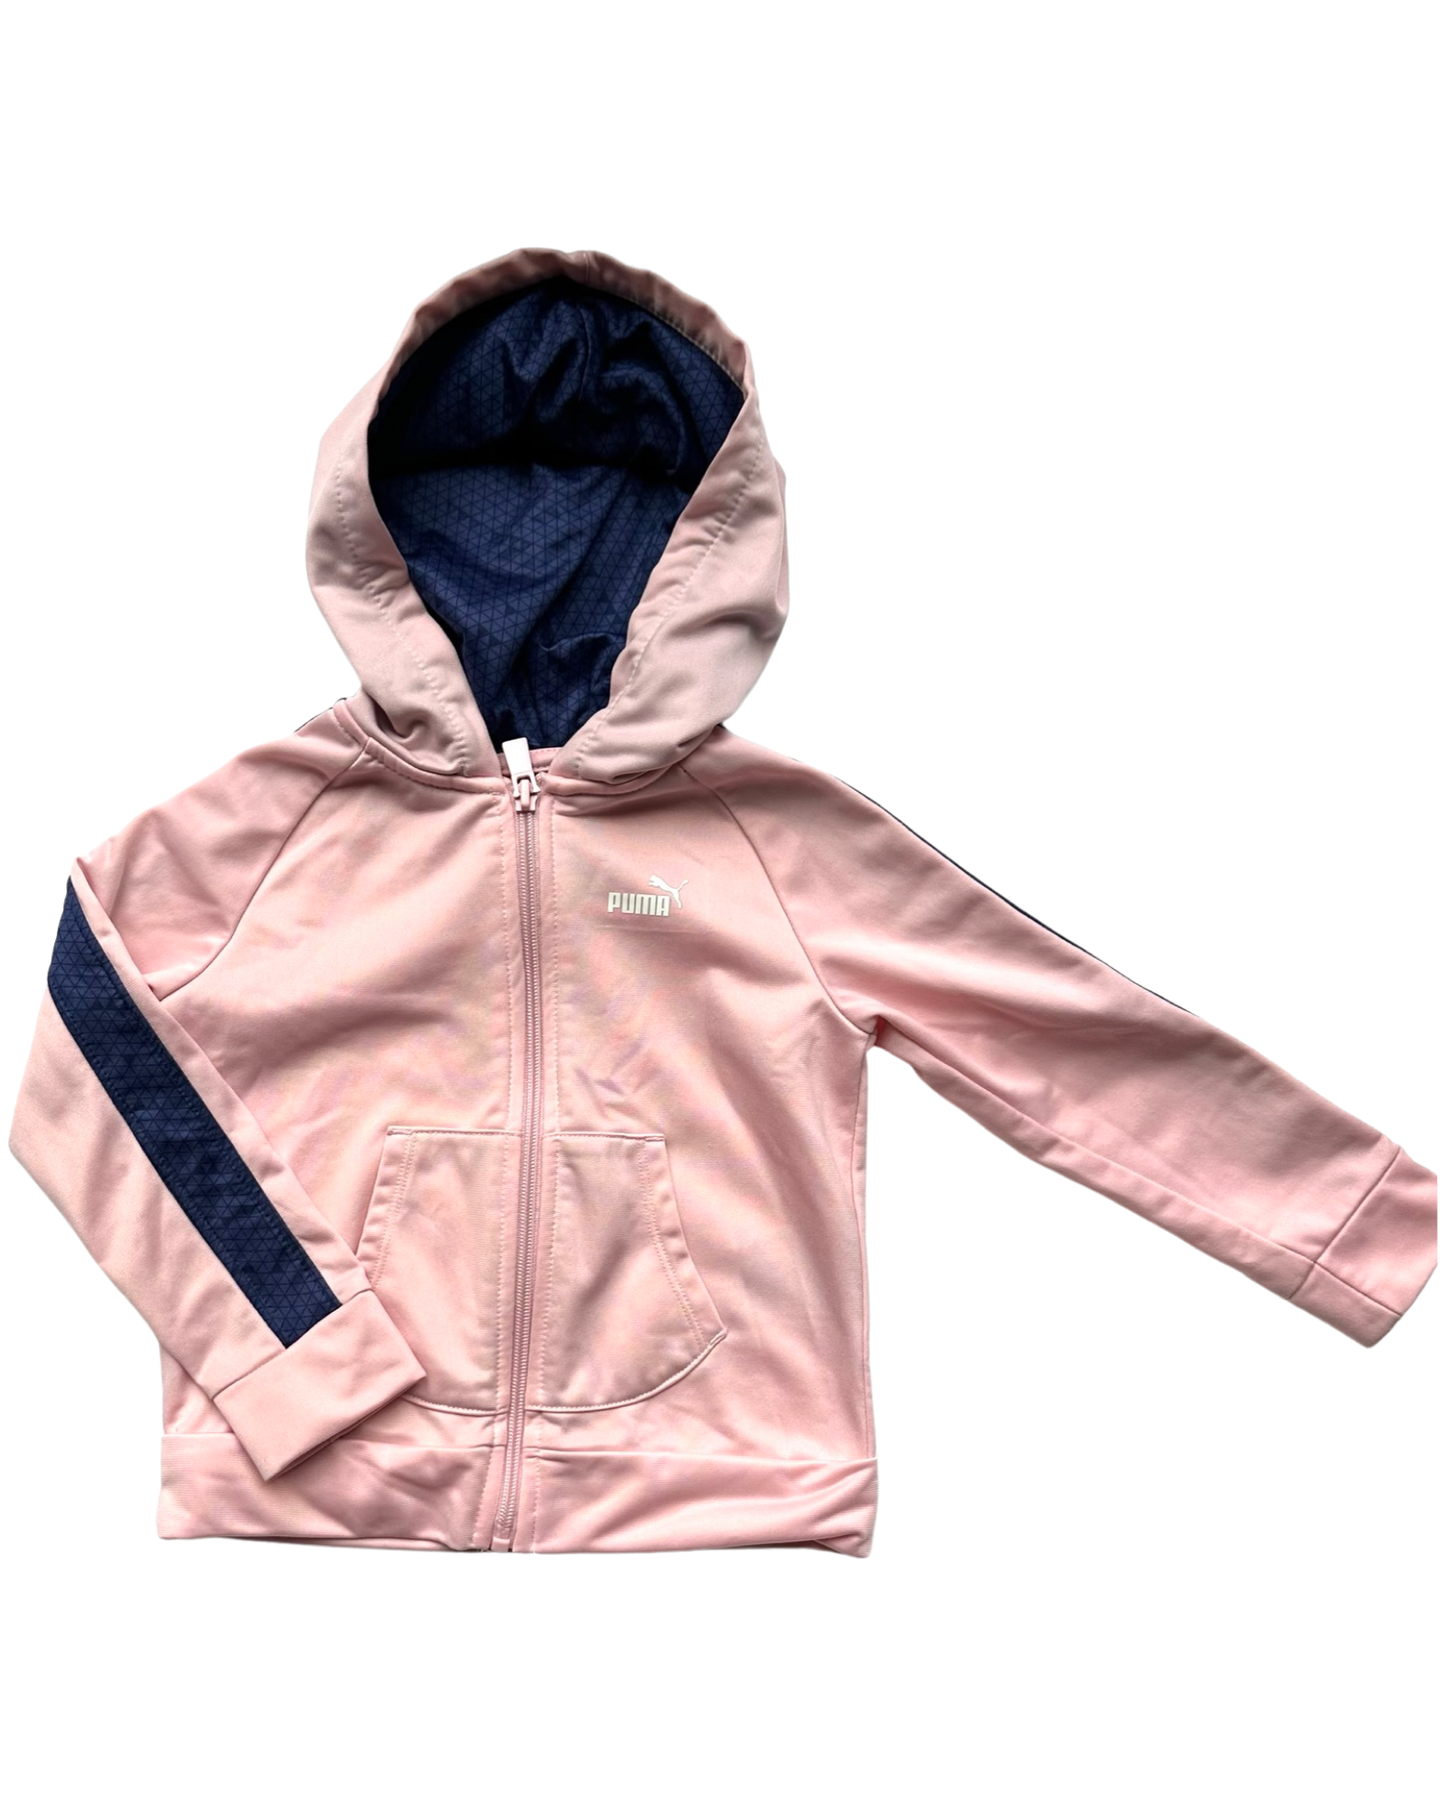 Vintage Puma pink track jacket (2-3yrs)